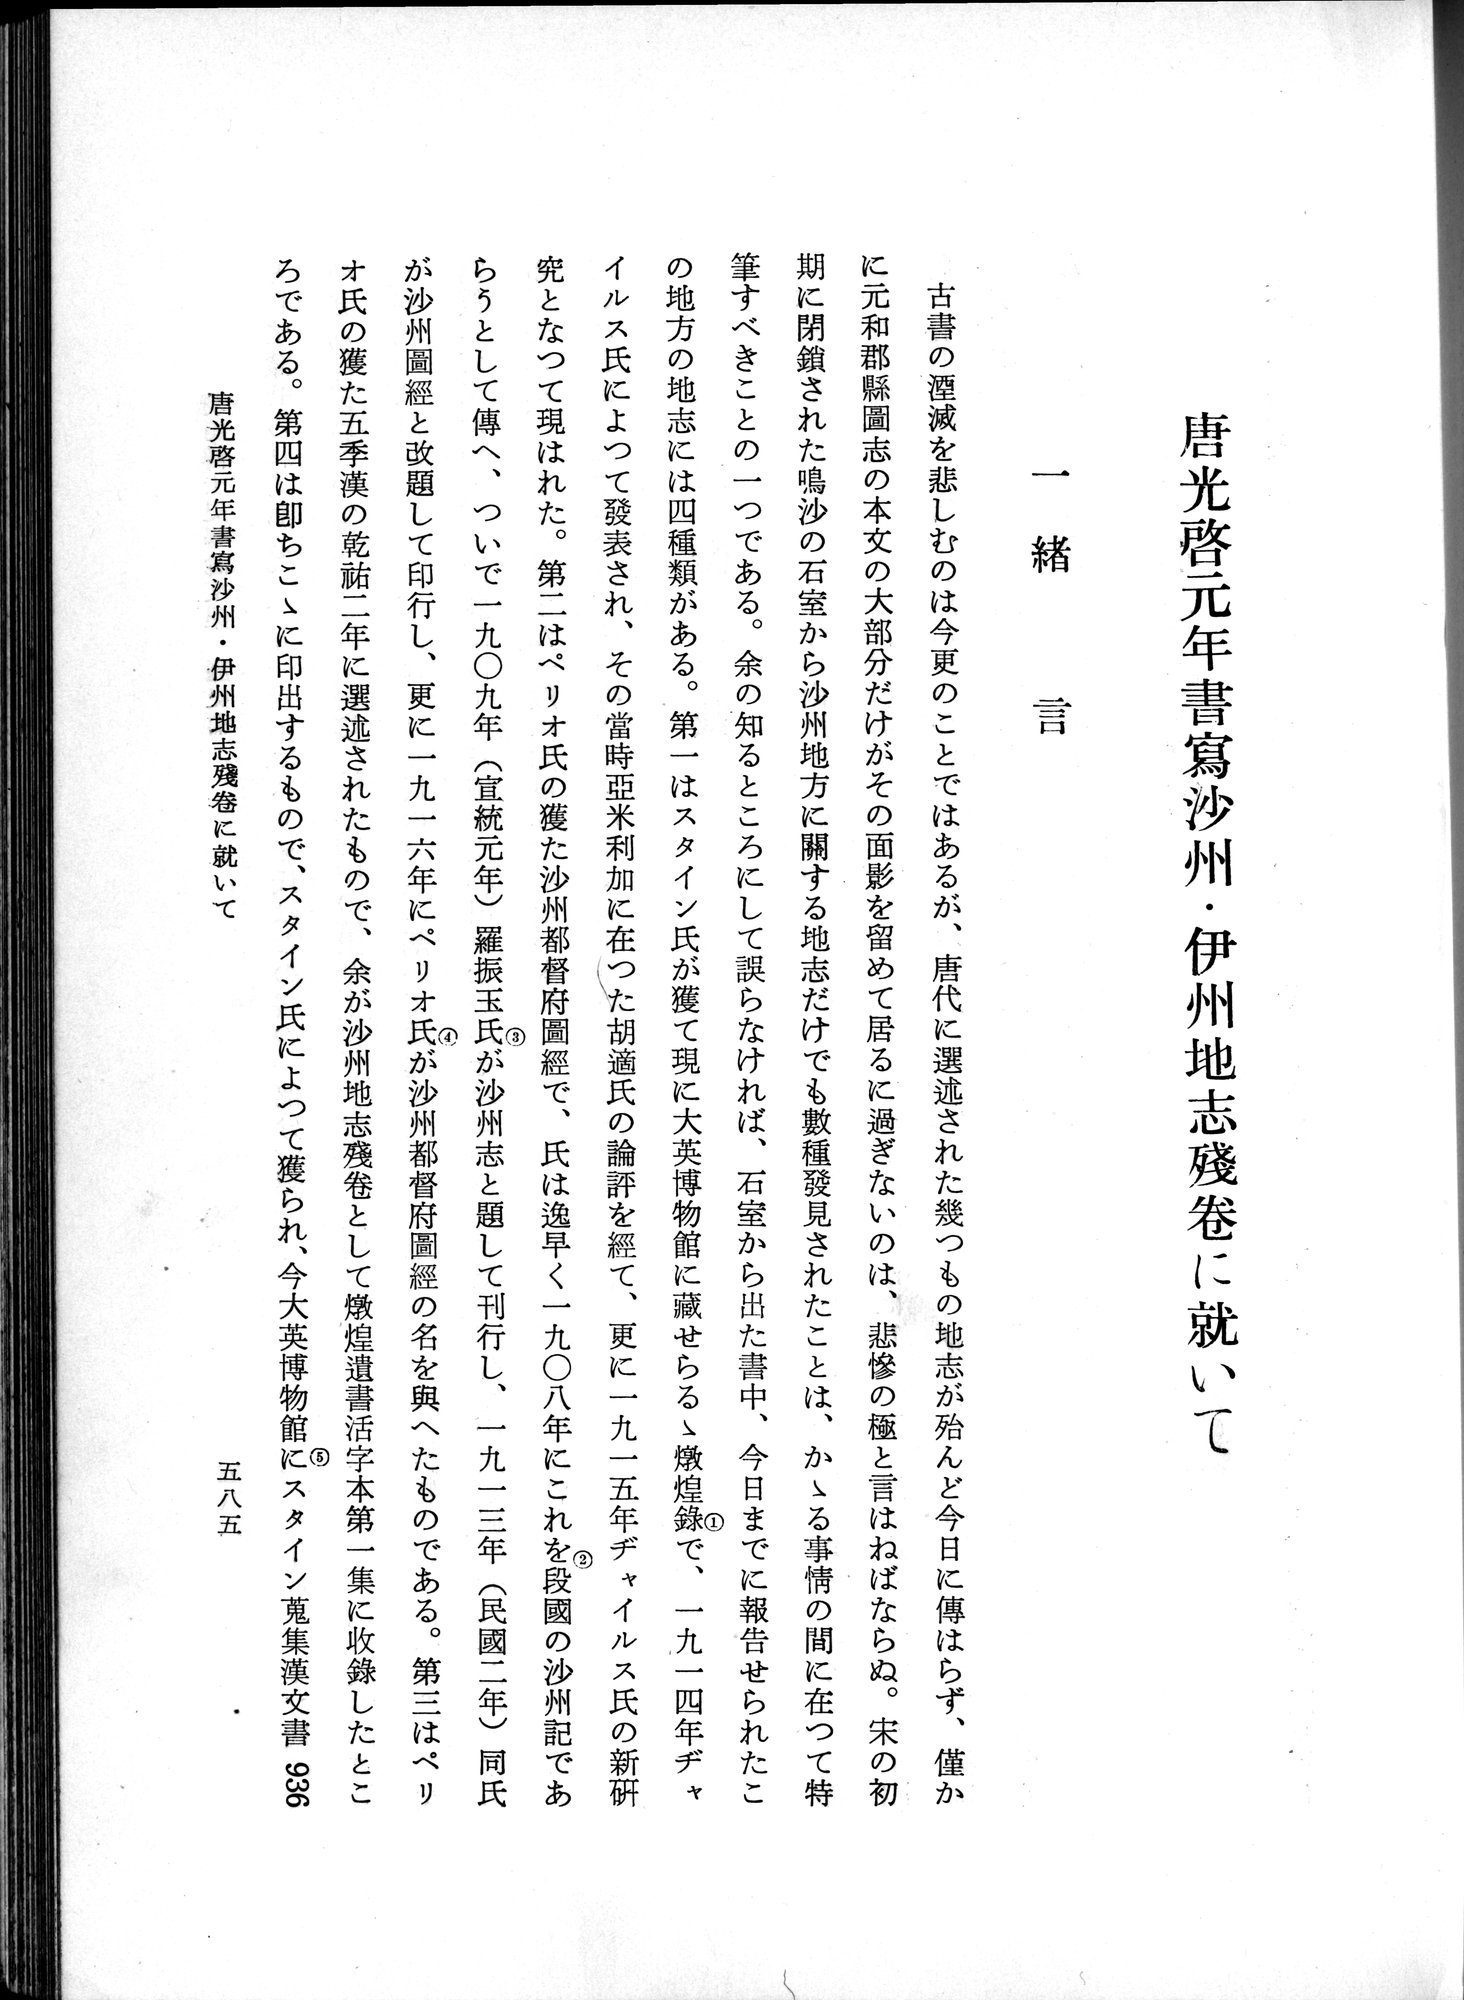 羽田博士史学論文集 : vol.1 / Page 623 (Grayscale High Resolution Image)